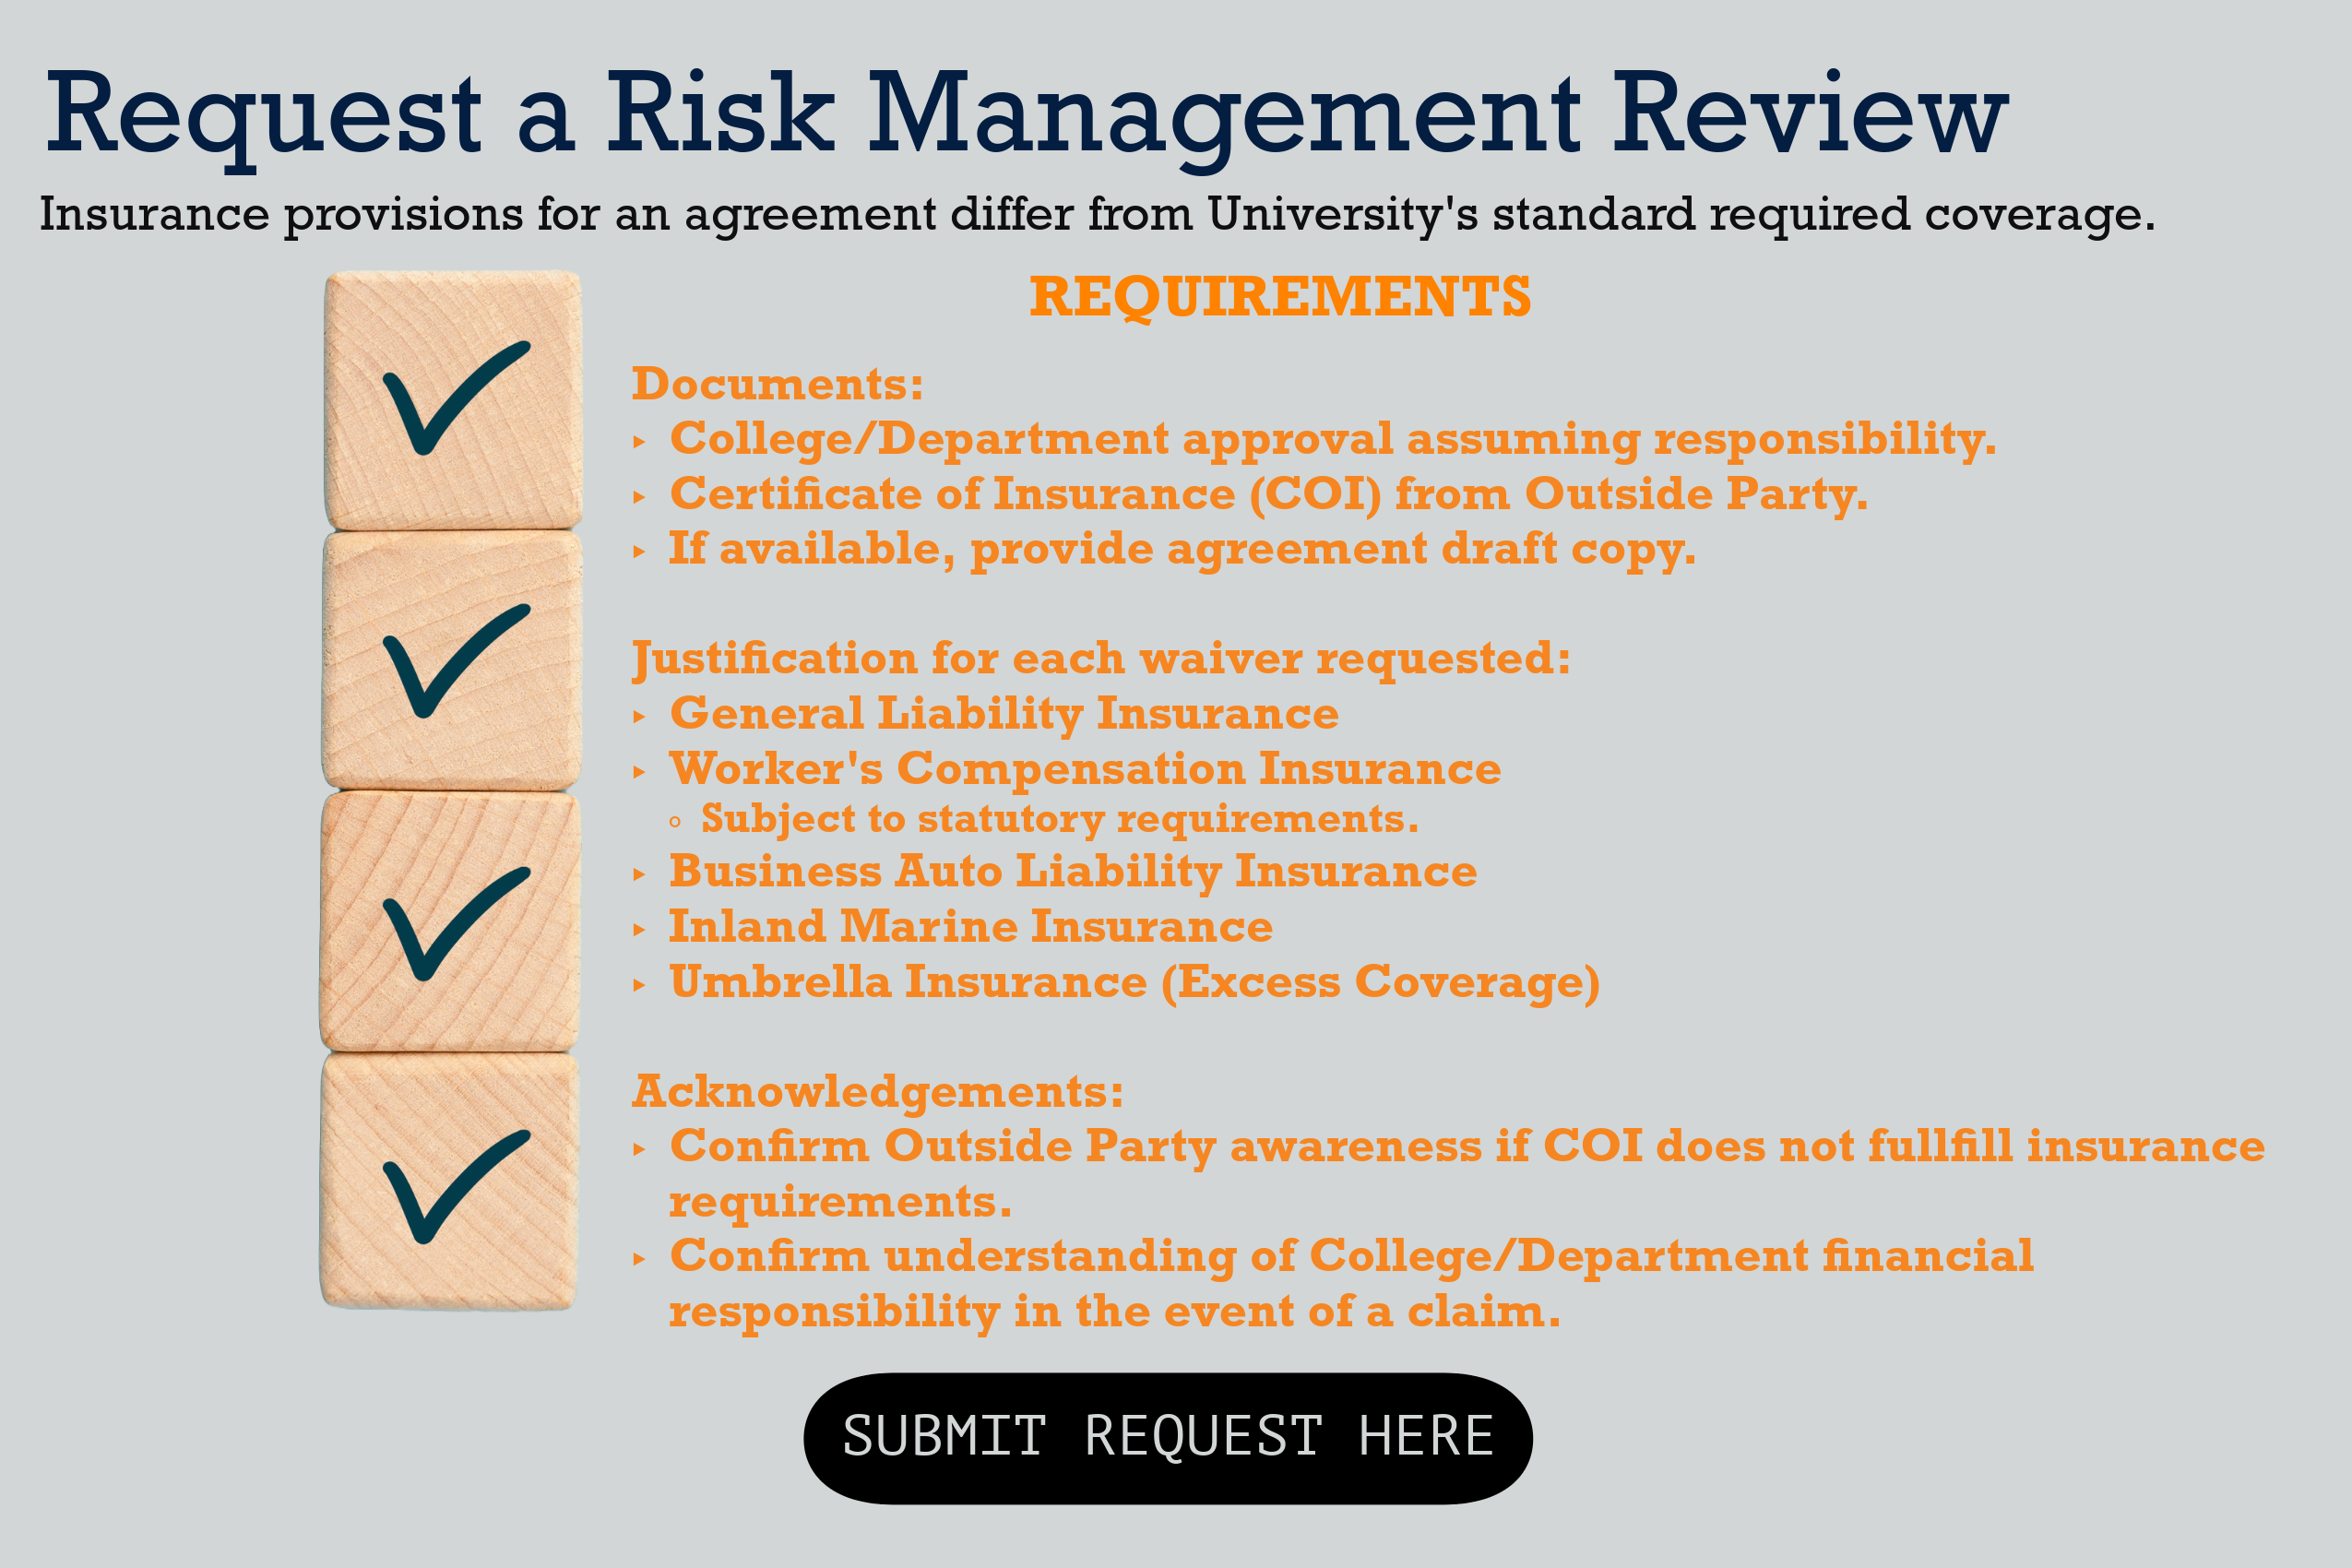 Risk Management Checklist